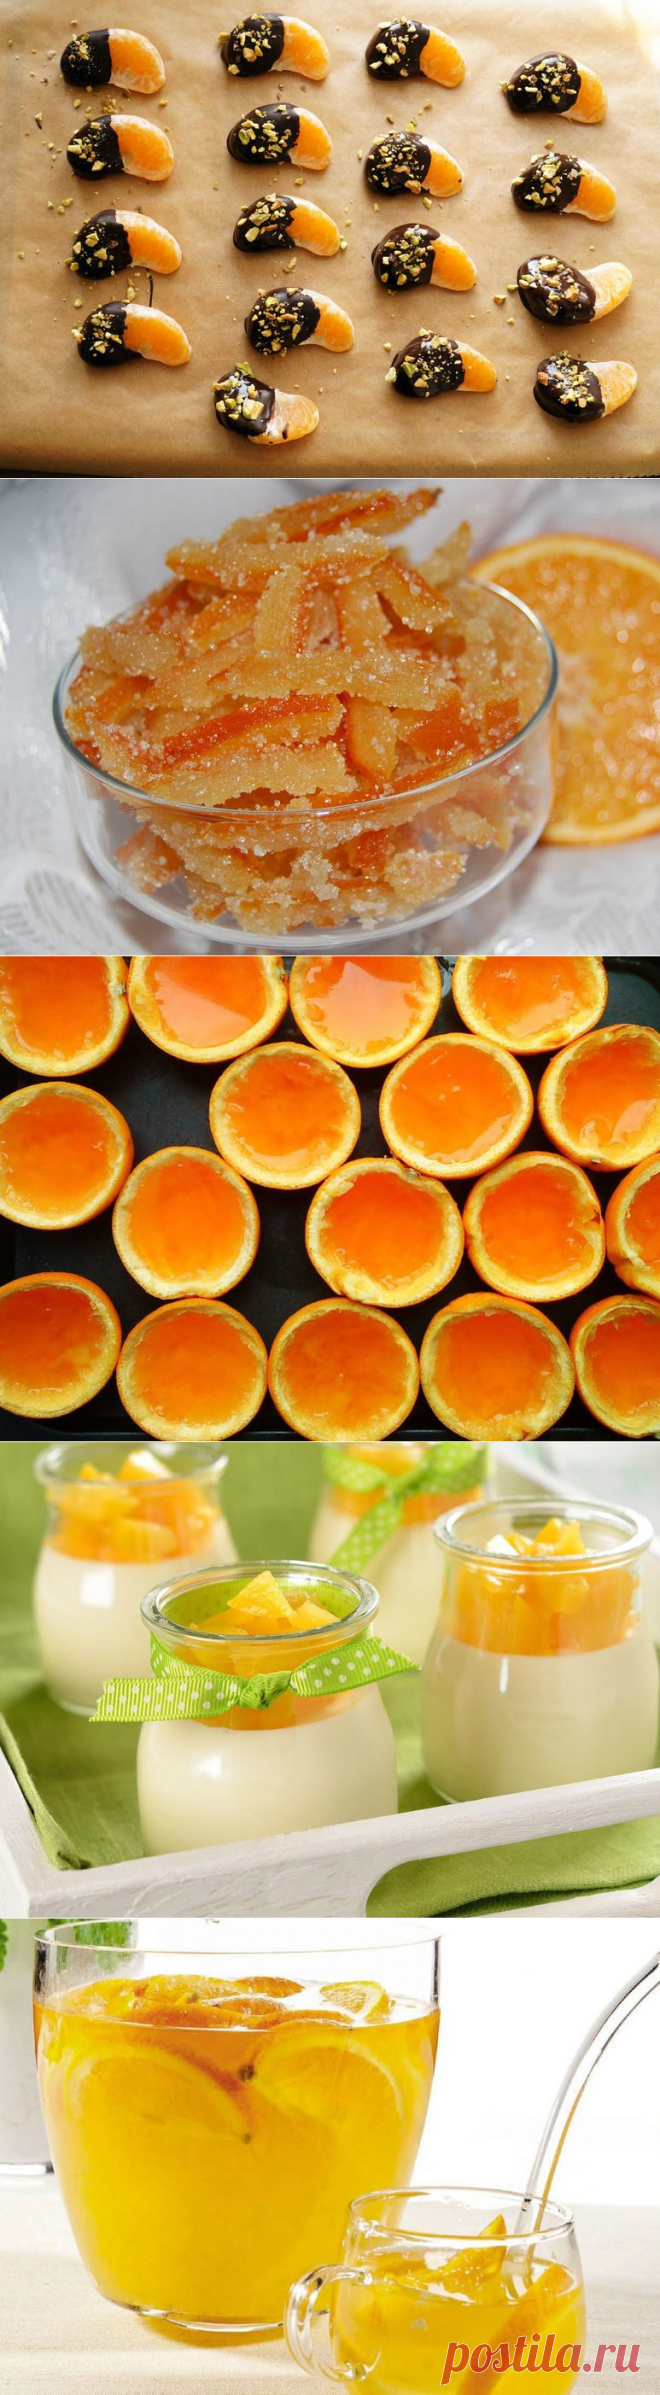 5 оригинальных блюд из мандаринов